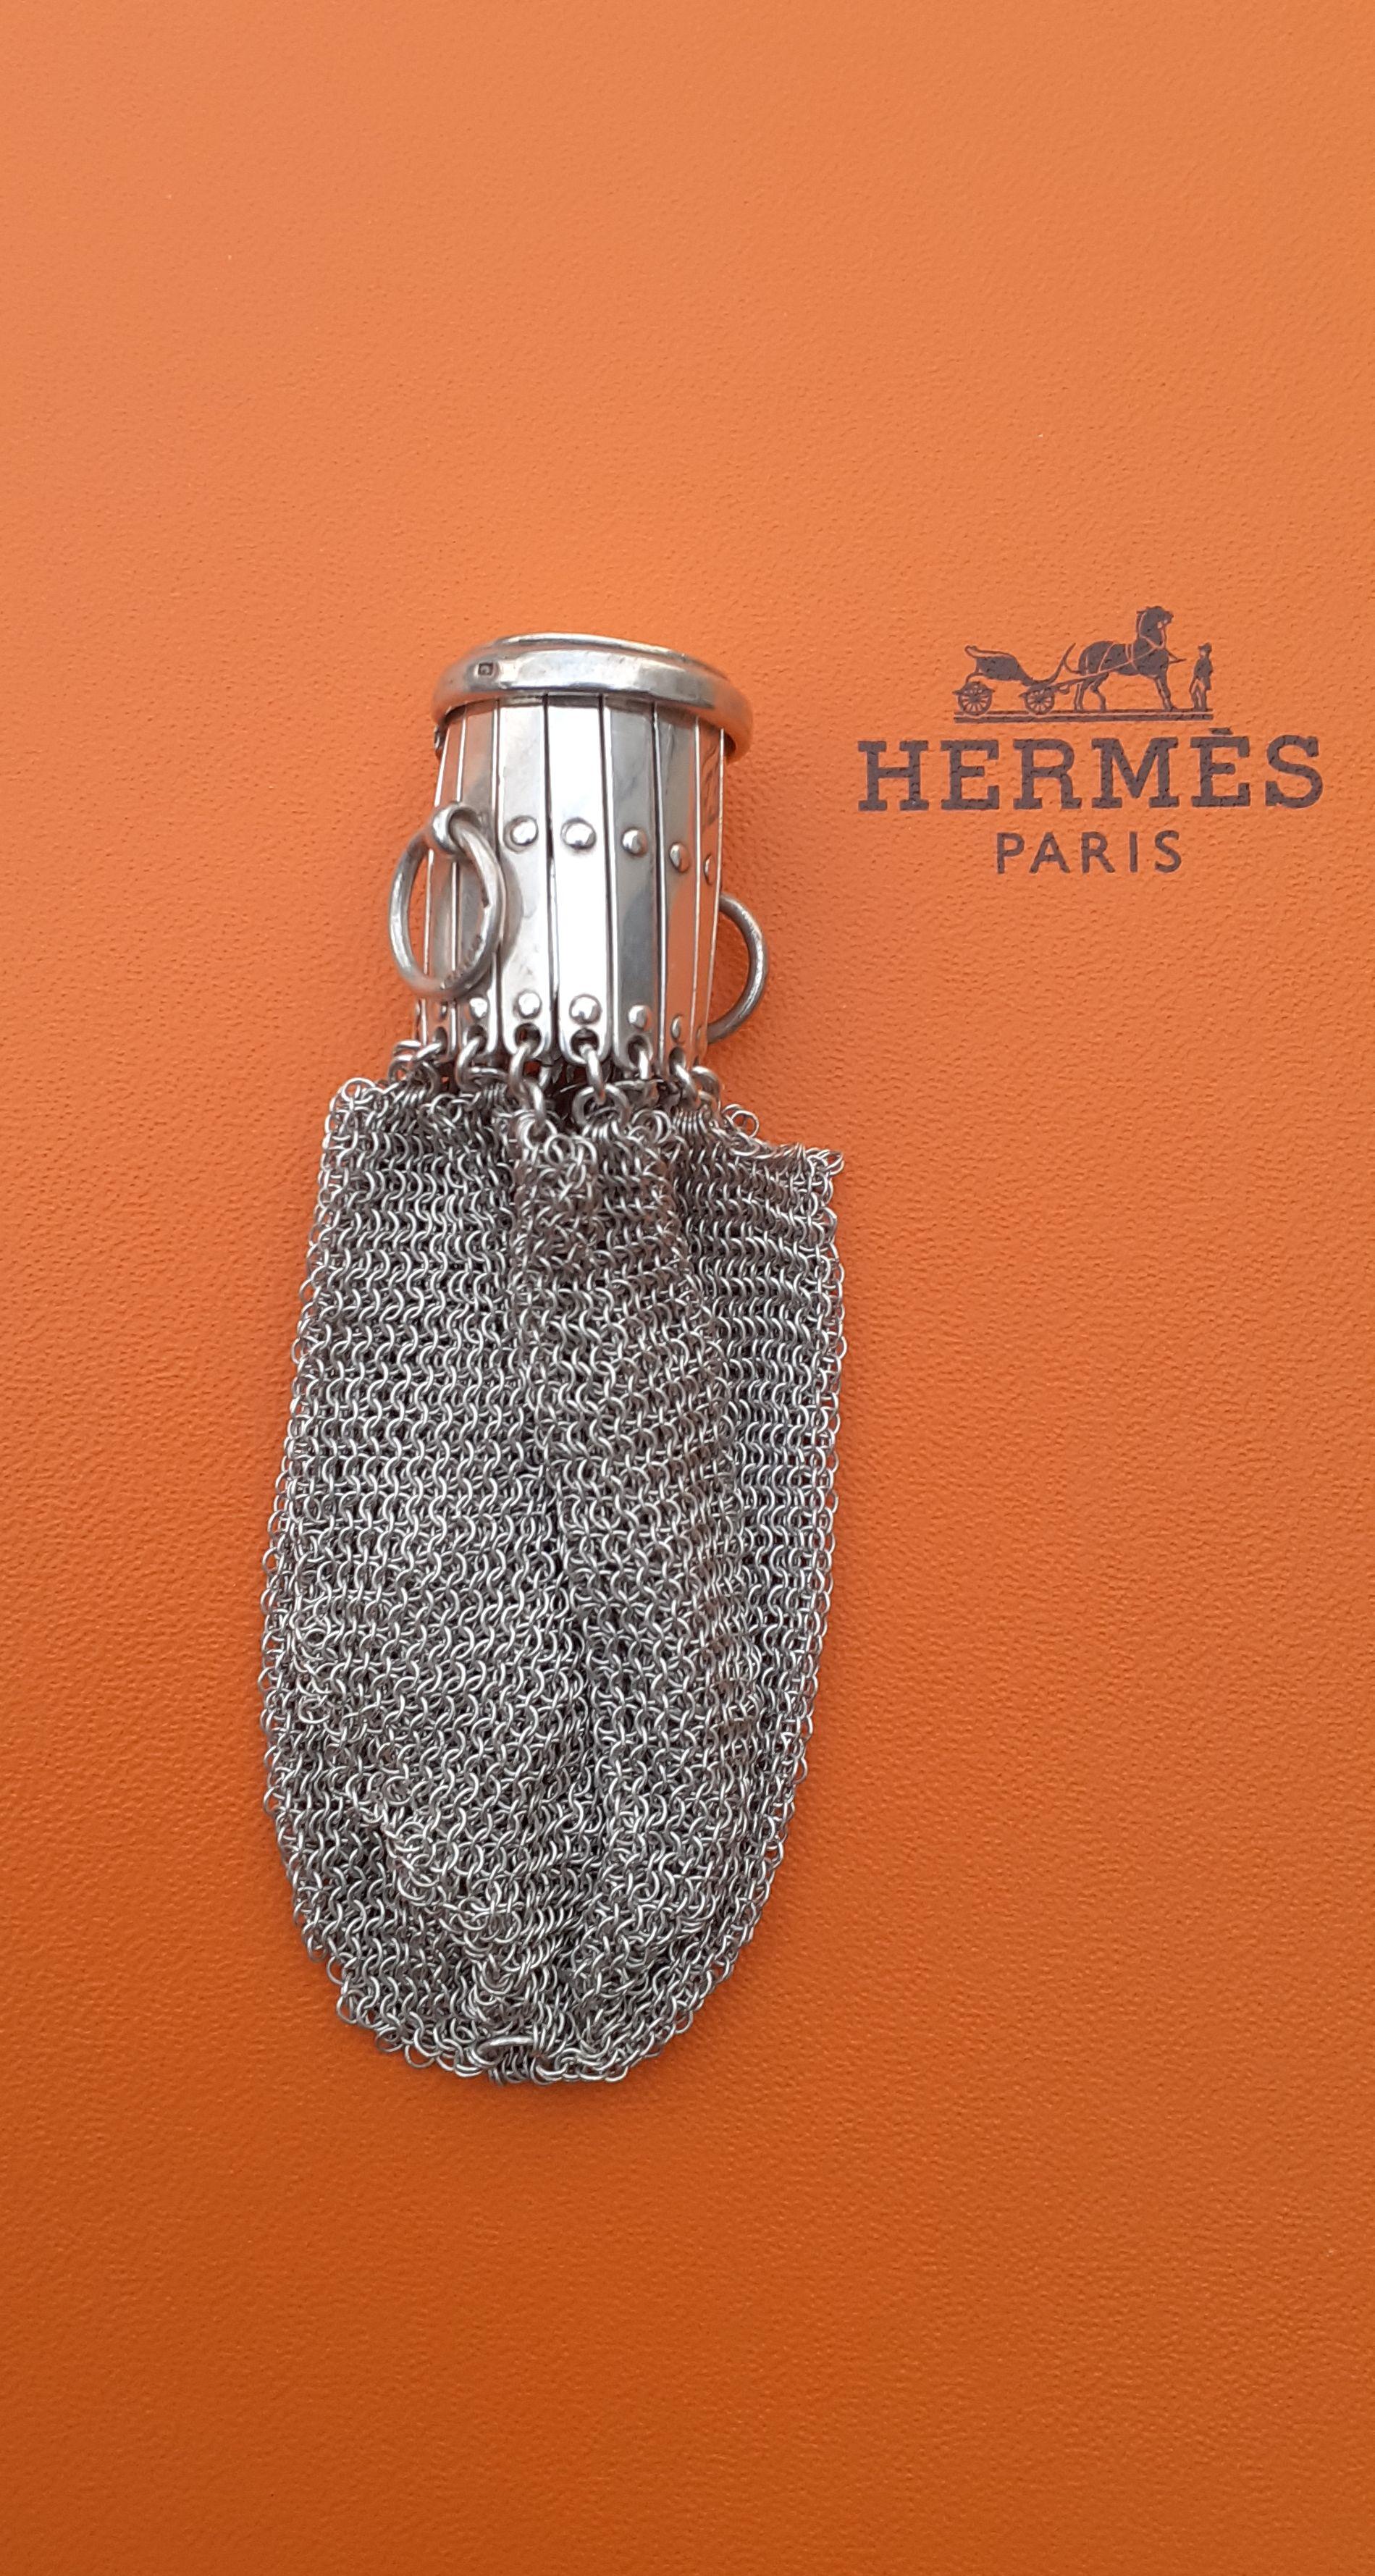 Authentique porte-monnaie Hermès en cotte de mailles, extrêmement rare 

Le sac à main est fabriqué en maille fluide, agrémenté d'une ouverture rétractable qui se ferme avec un couvercle

2 petits anneaux sur les côtés

En argent 835 (83,5%